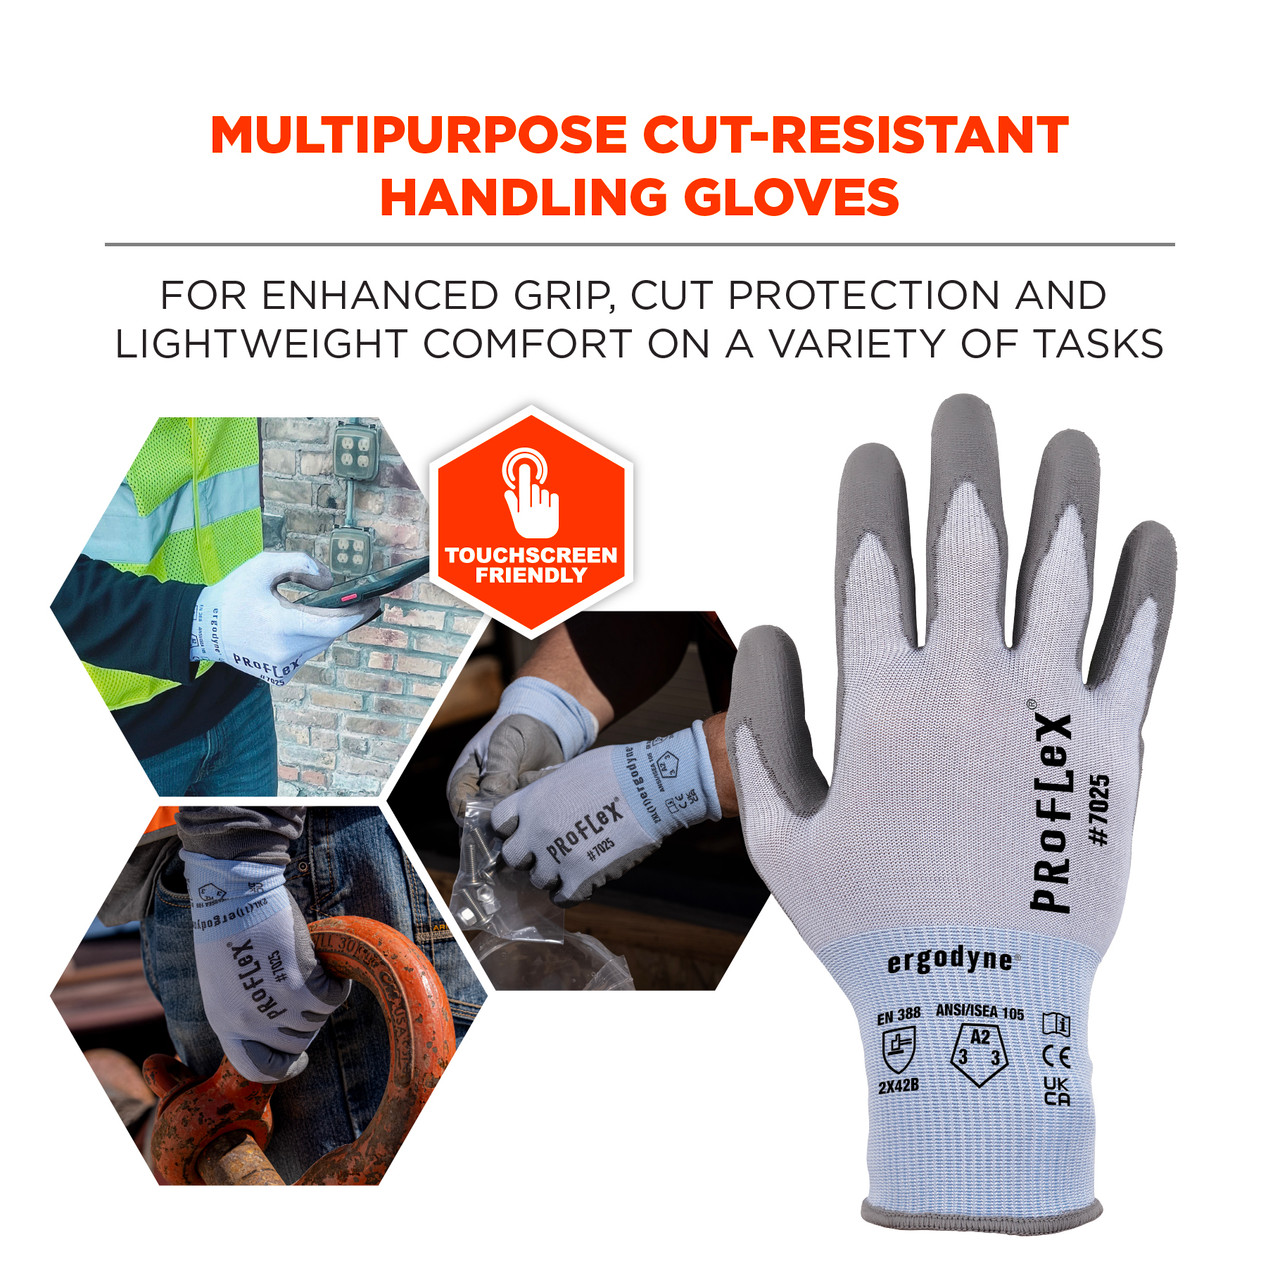 ANSI/ISEA 105-2016 A2 PU Coated CR Gloves